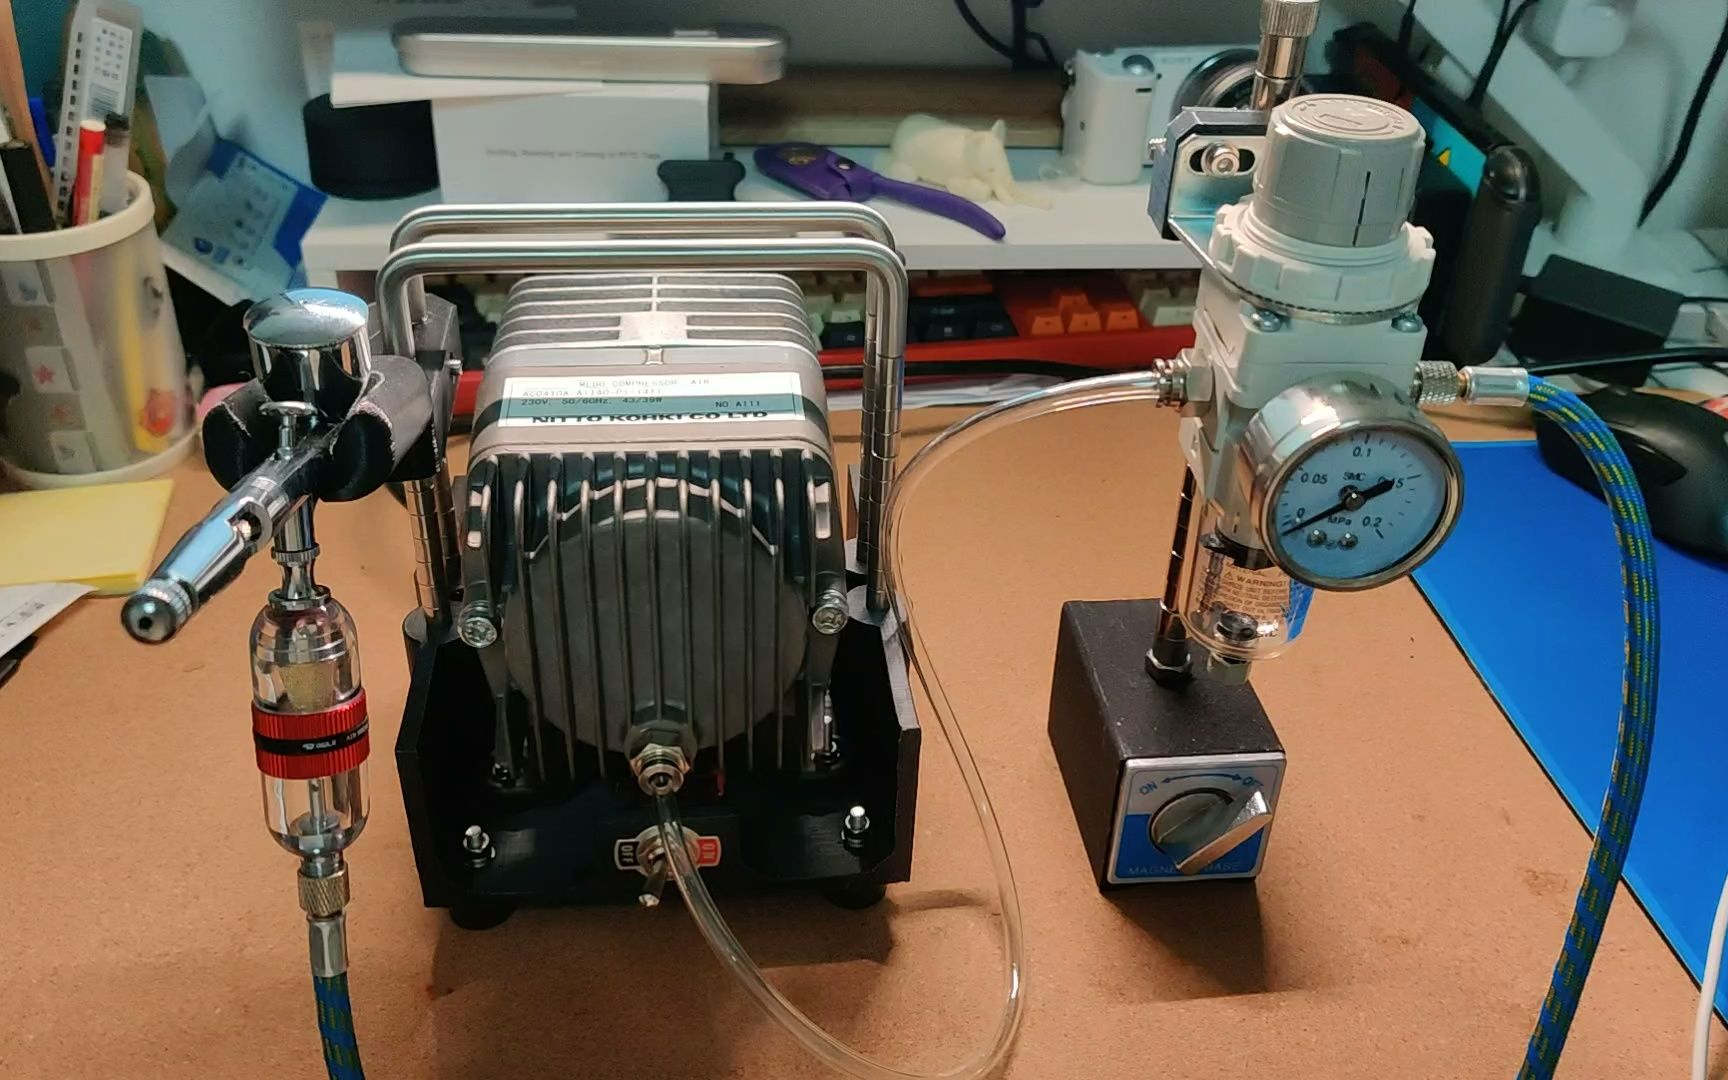 自制高压气泵制作过程图片